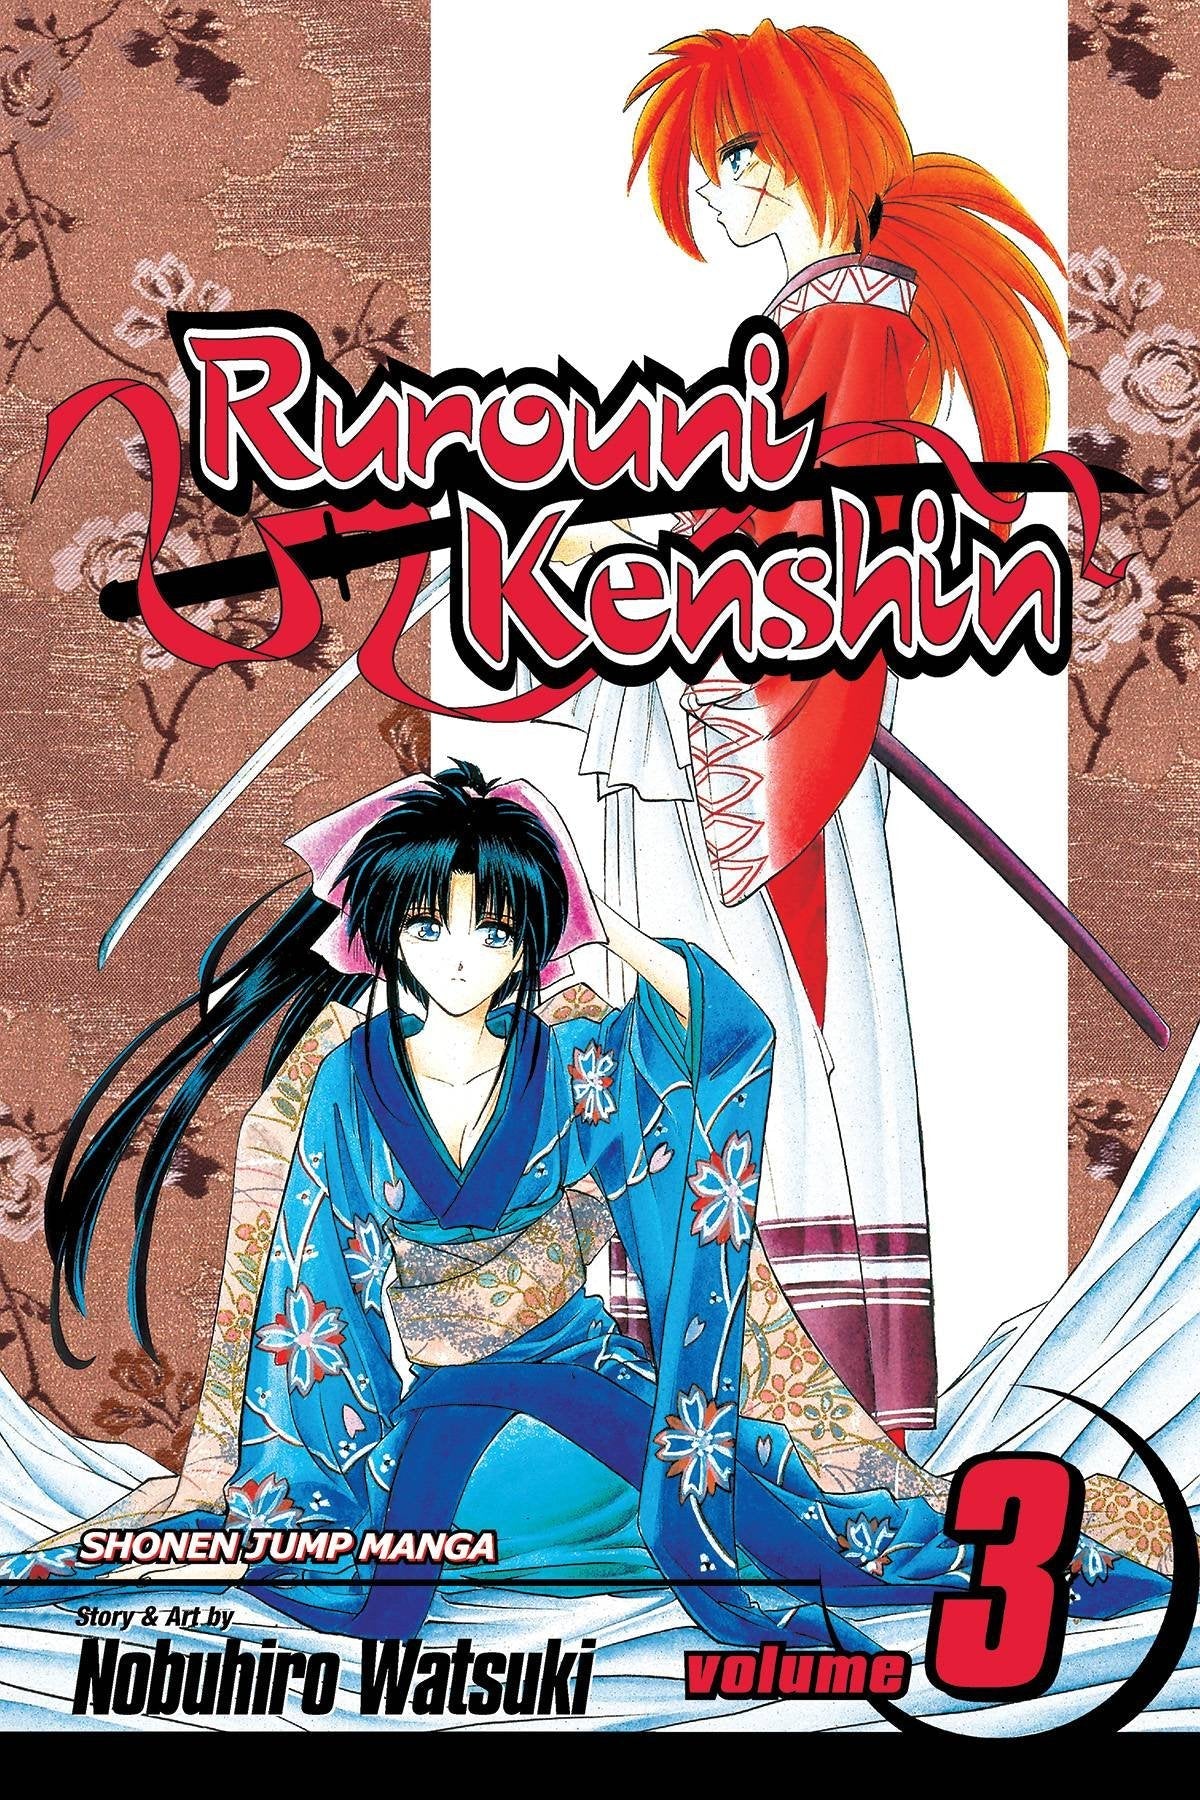 Kenshin Himura  Kenshin anime, Rurouni kenshin, Shōnen manga